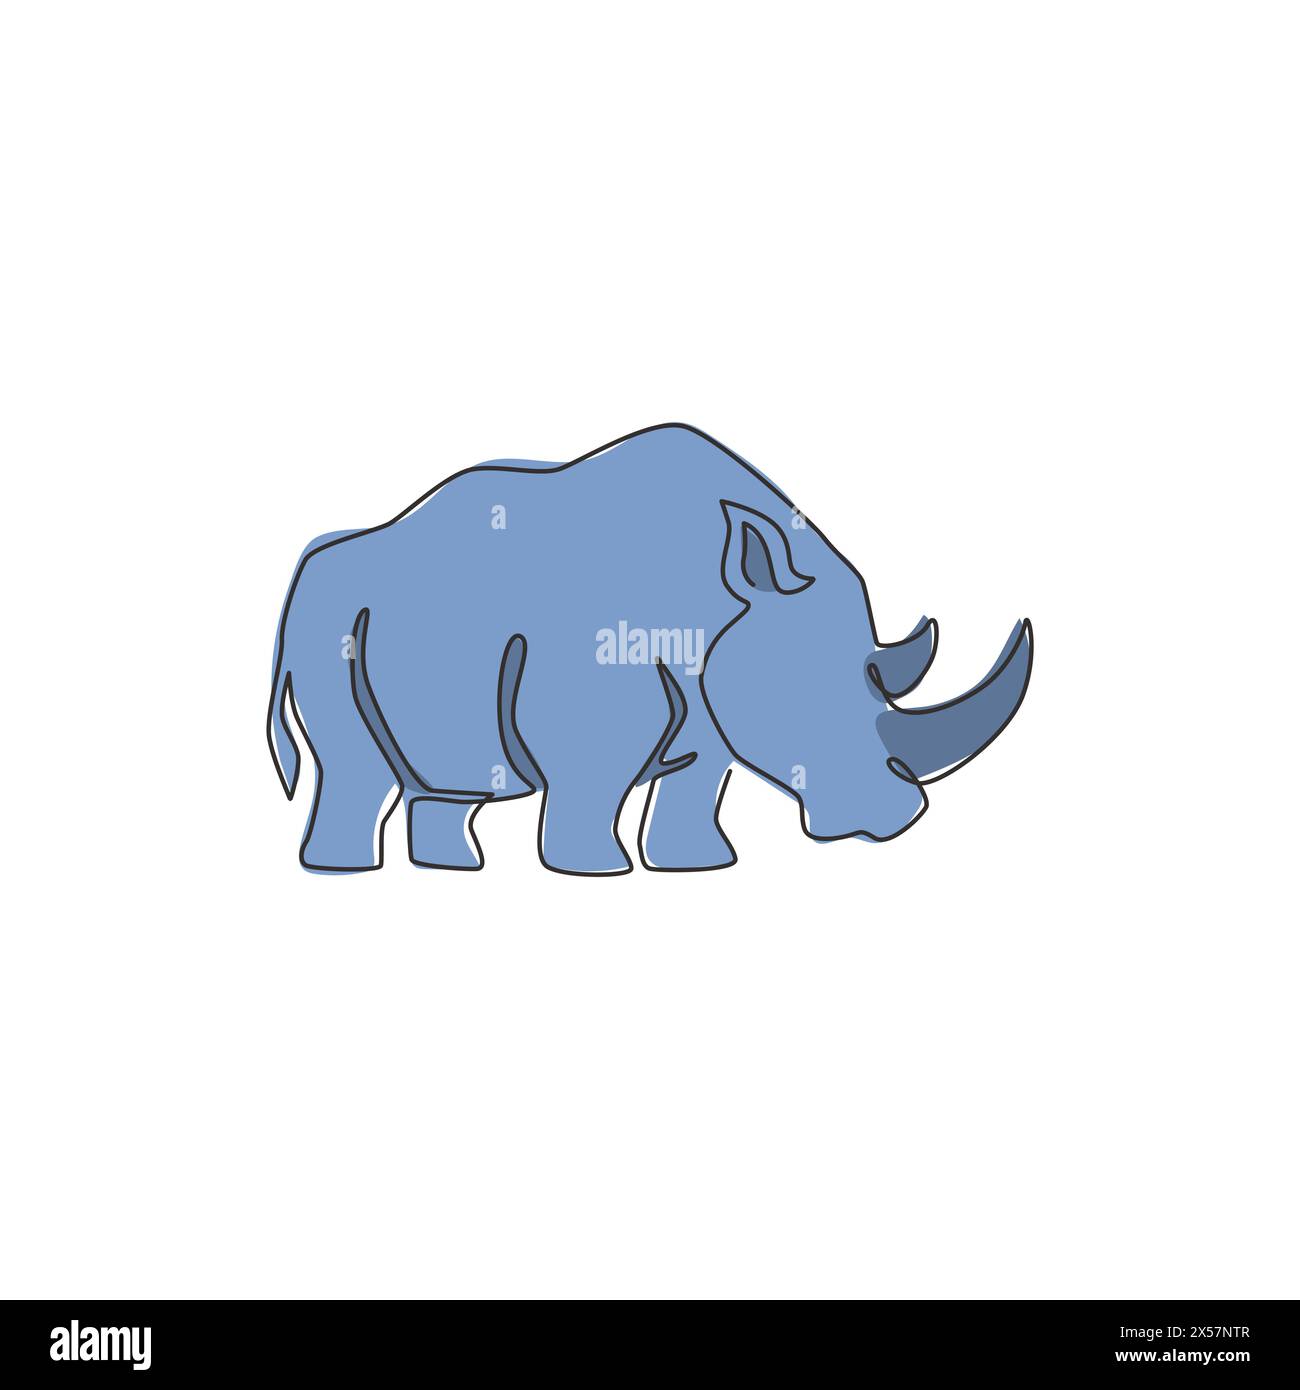 Un dessin de ligne continue de rhinocéros blanc fort pour l'identité du logo de l'entreprise. Concept de mascotte d'animaux rhinocéros africains pour safari zoologique national. Simple Illustration de Vecteur